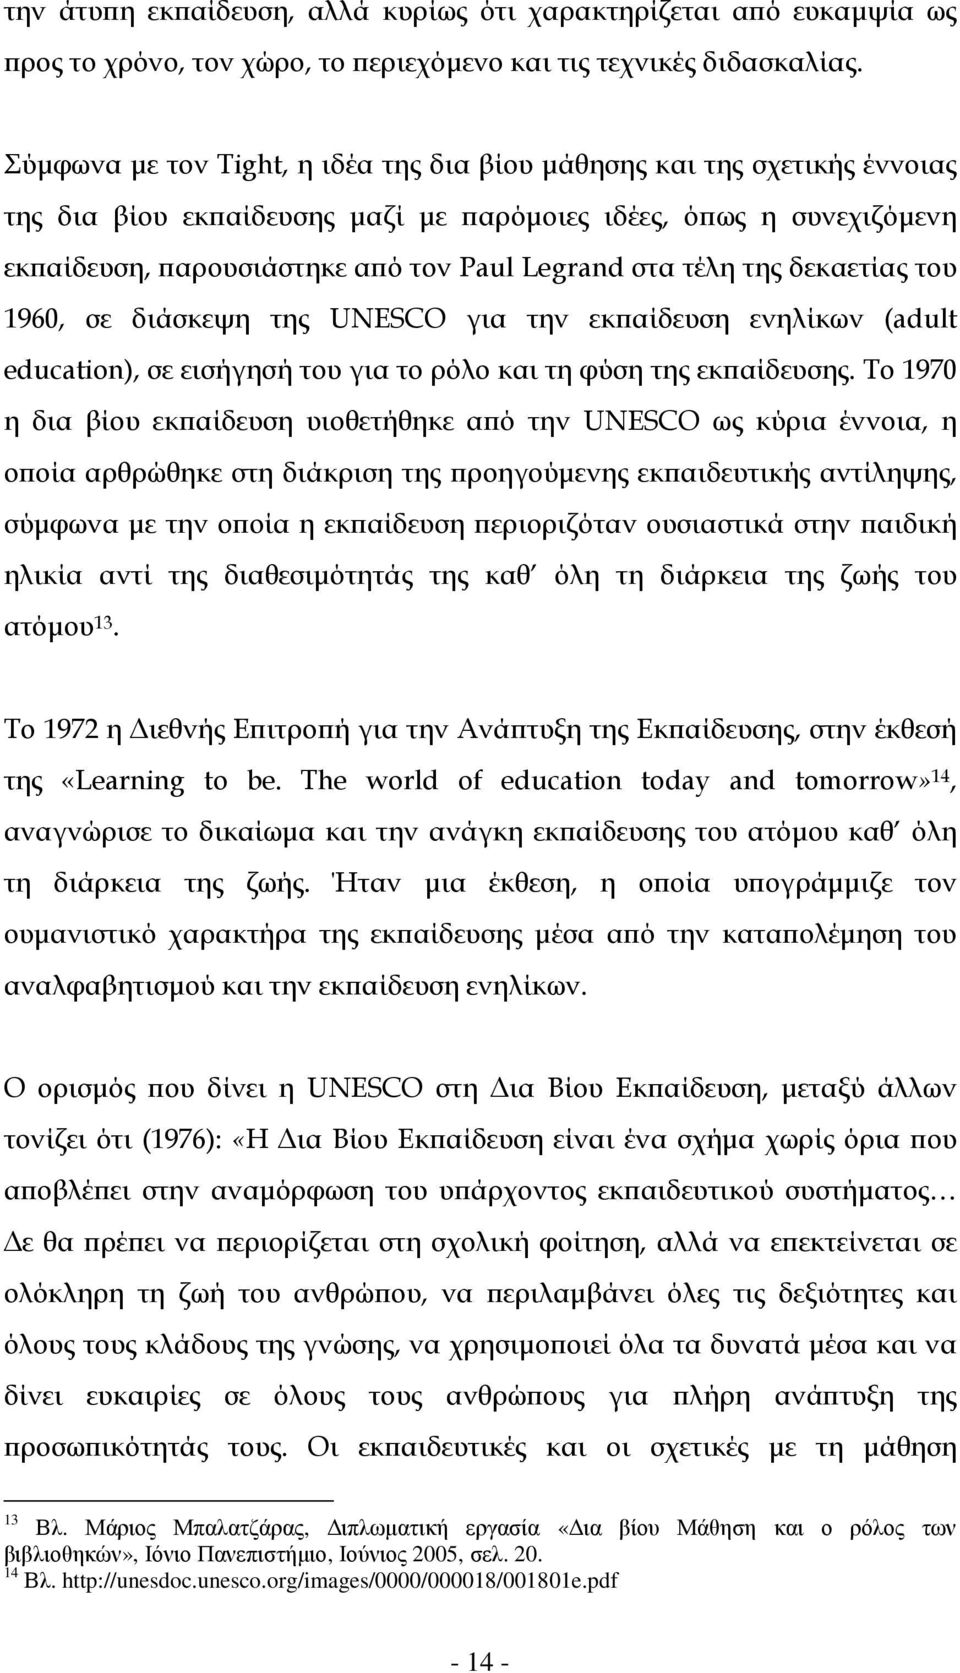 της δεκαετίας του 1960, σε διάσκεψη της UNESCO για την εκ αίδευση ενηλίκων (adult education), σε εισήγησή του για το ρόλο και τη φύση της εκ αίδευσης.